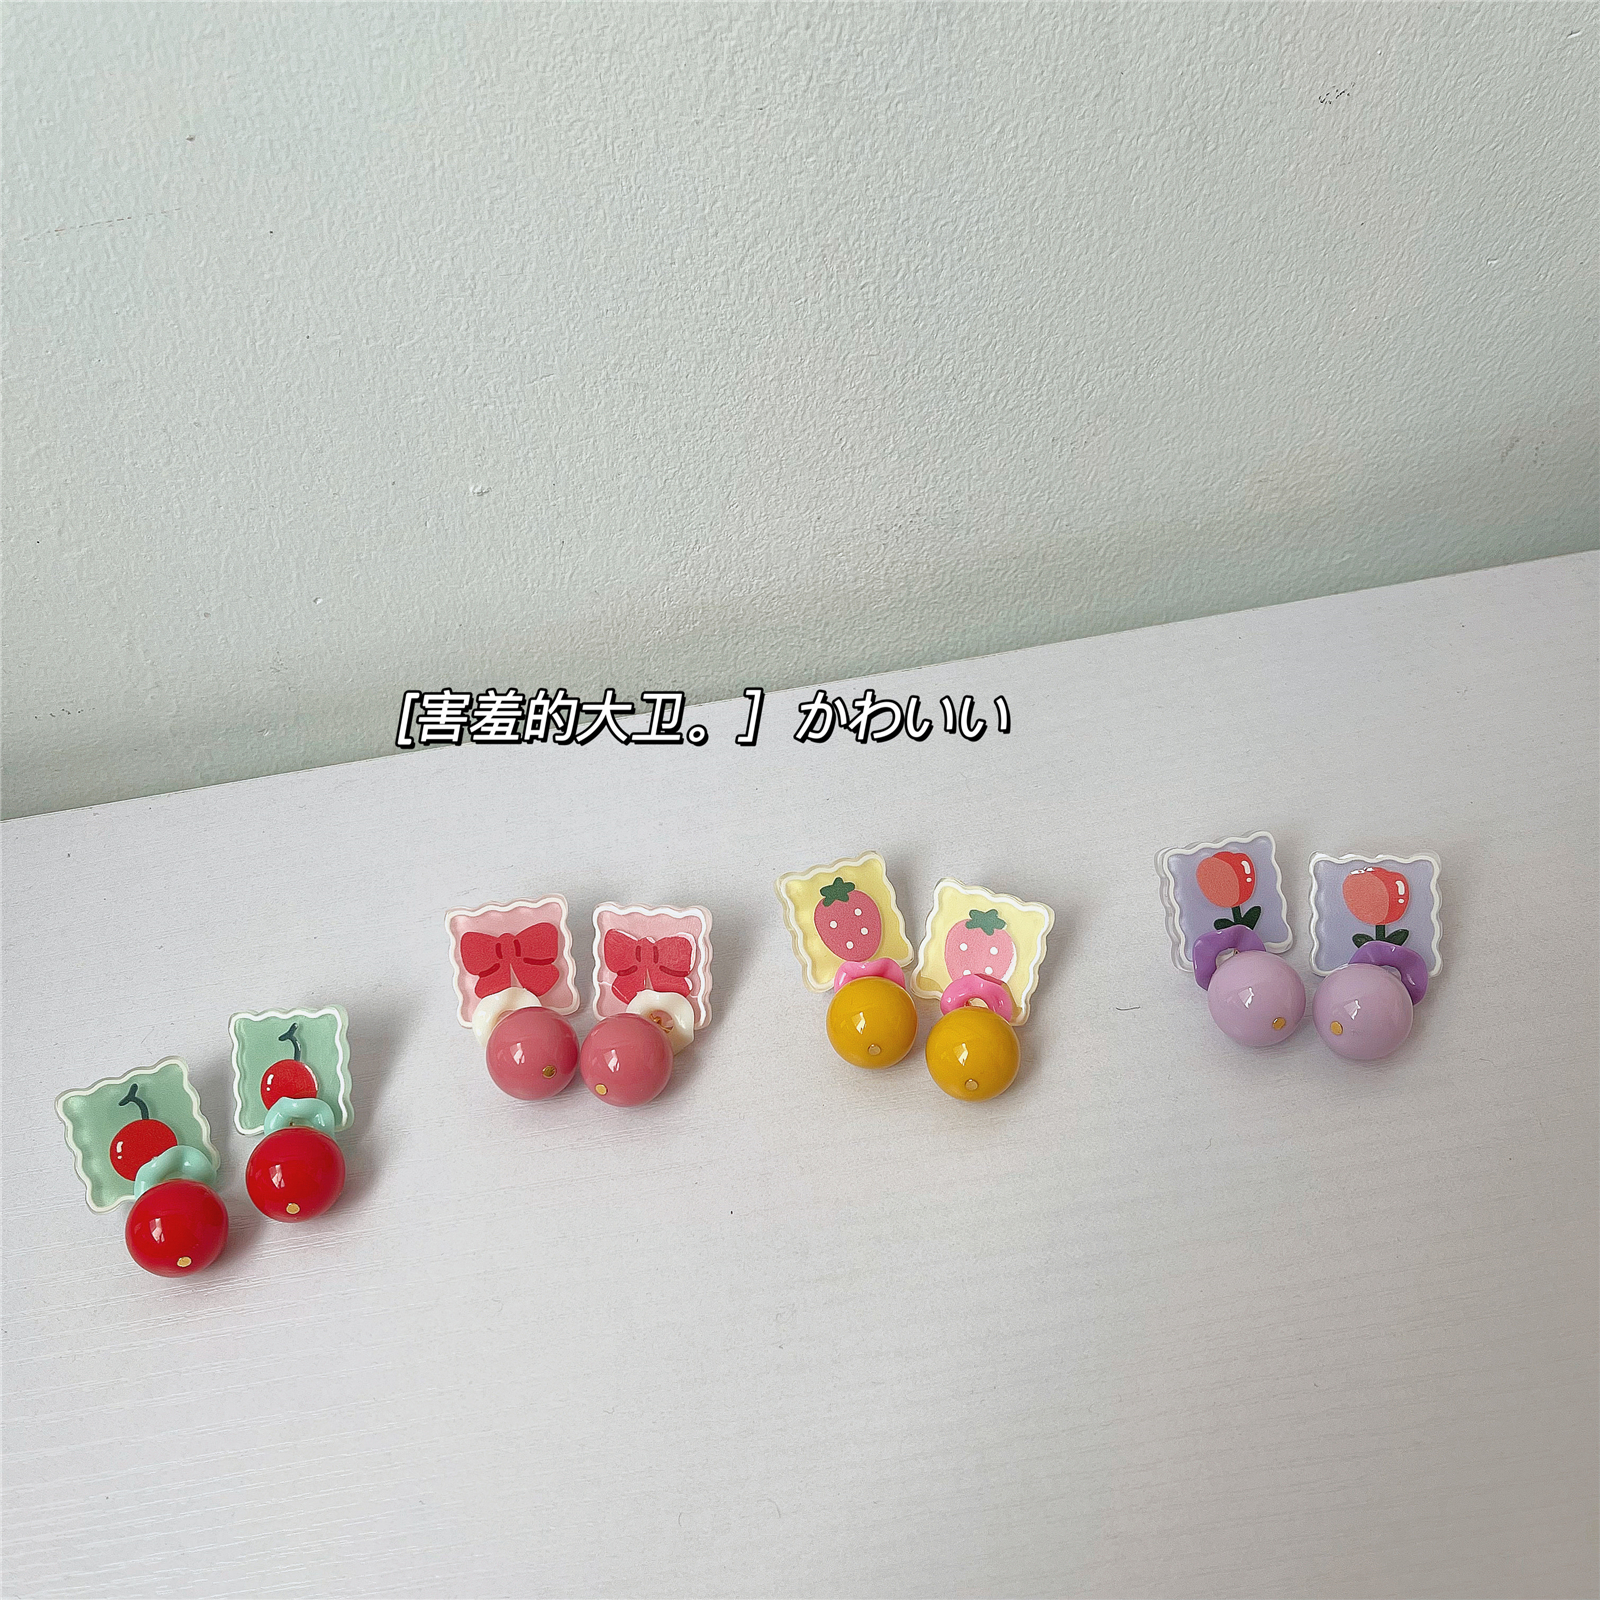 水果拼盘 原创设计复古可爱童趣少女感 小众甜美手绘方形耳夹耳环